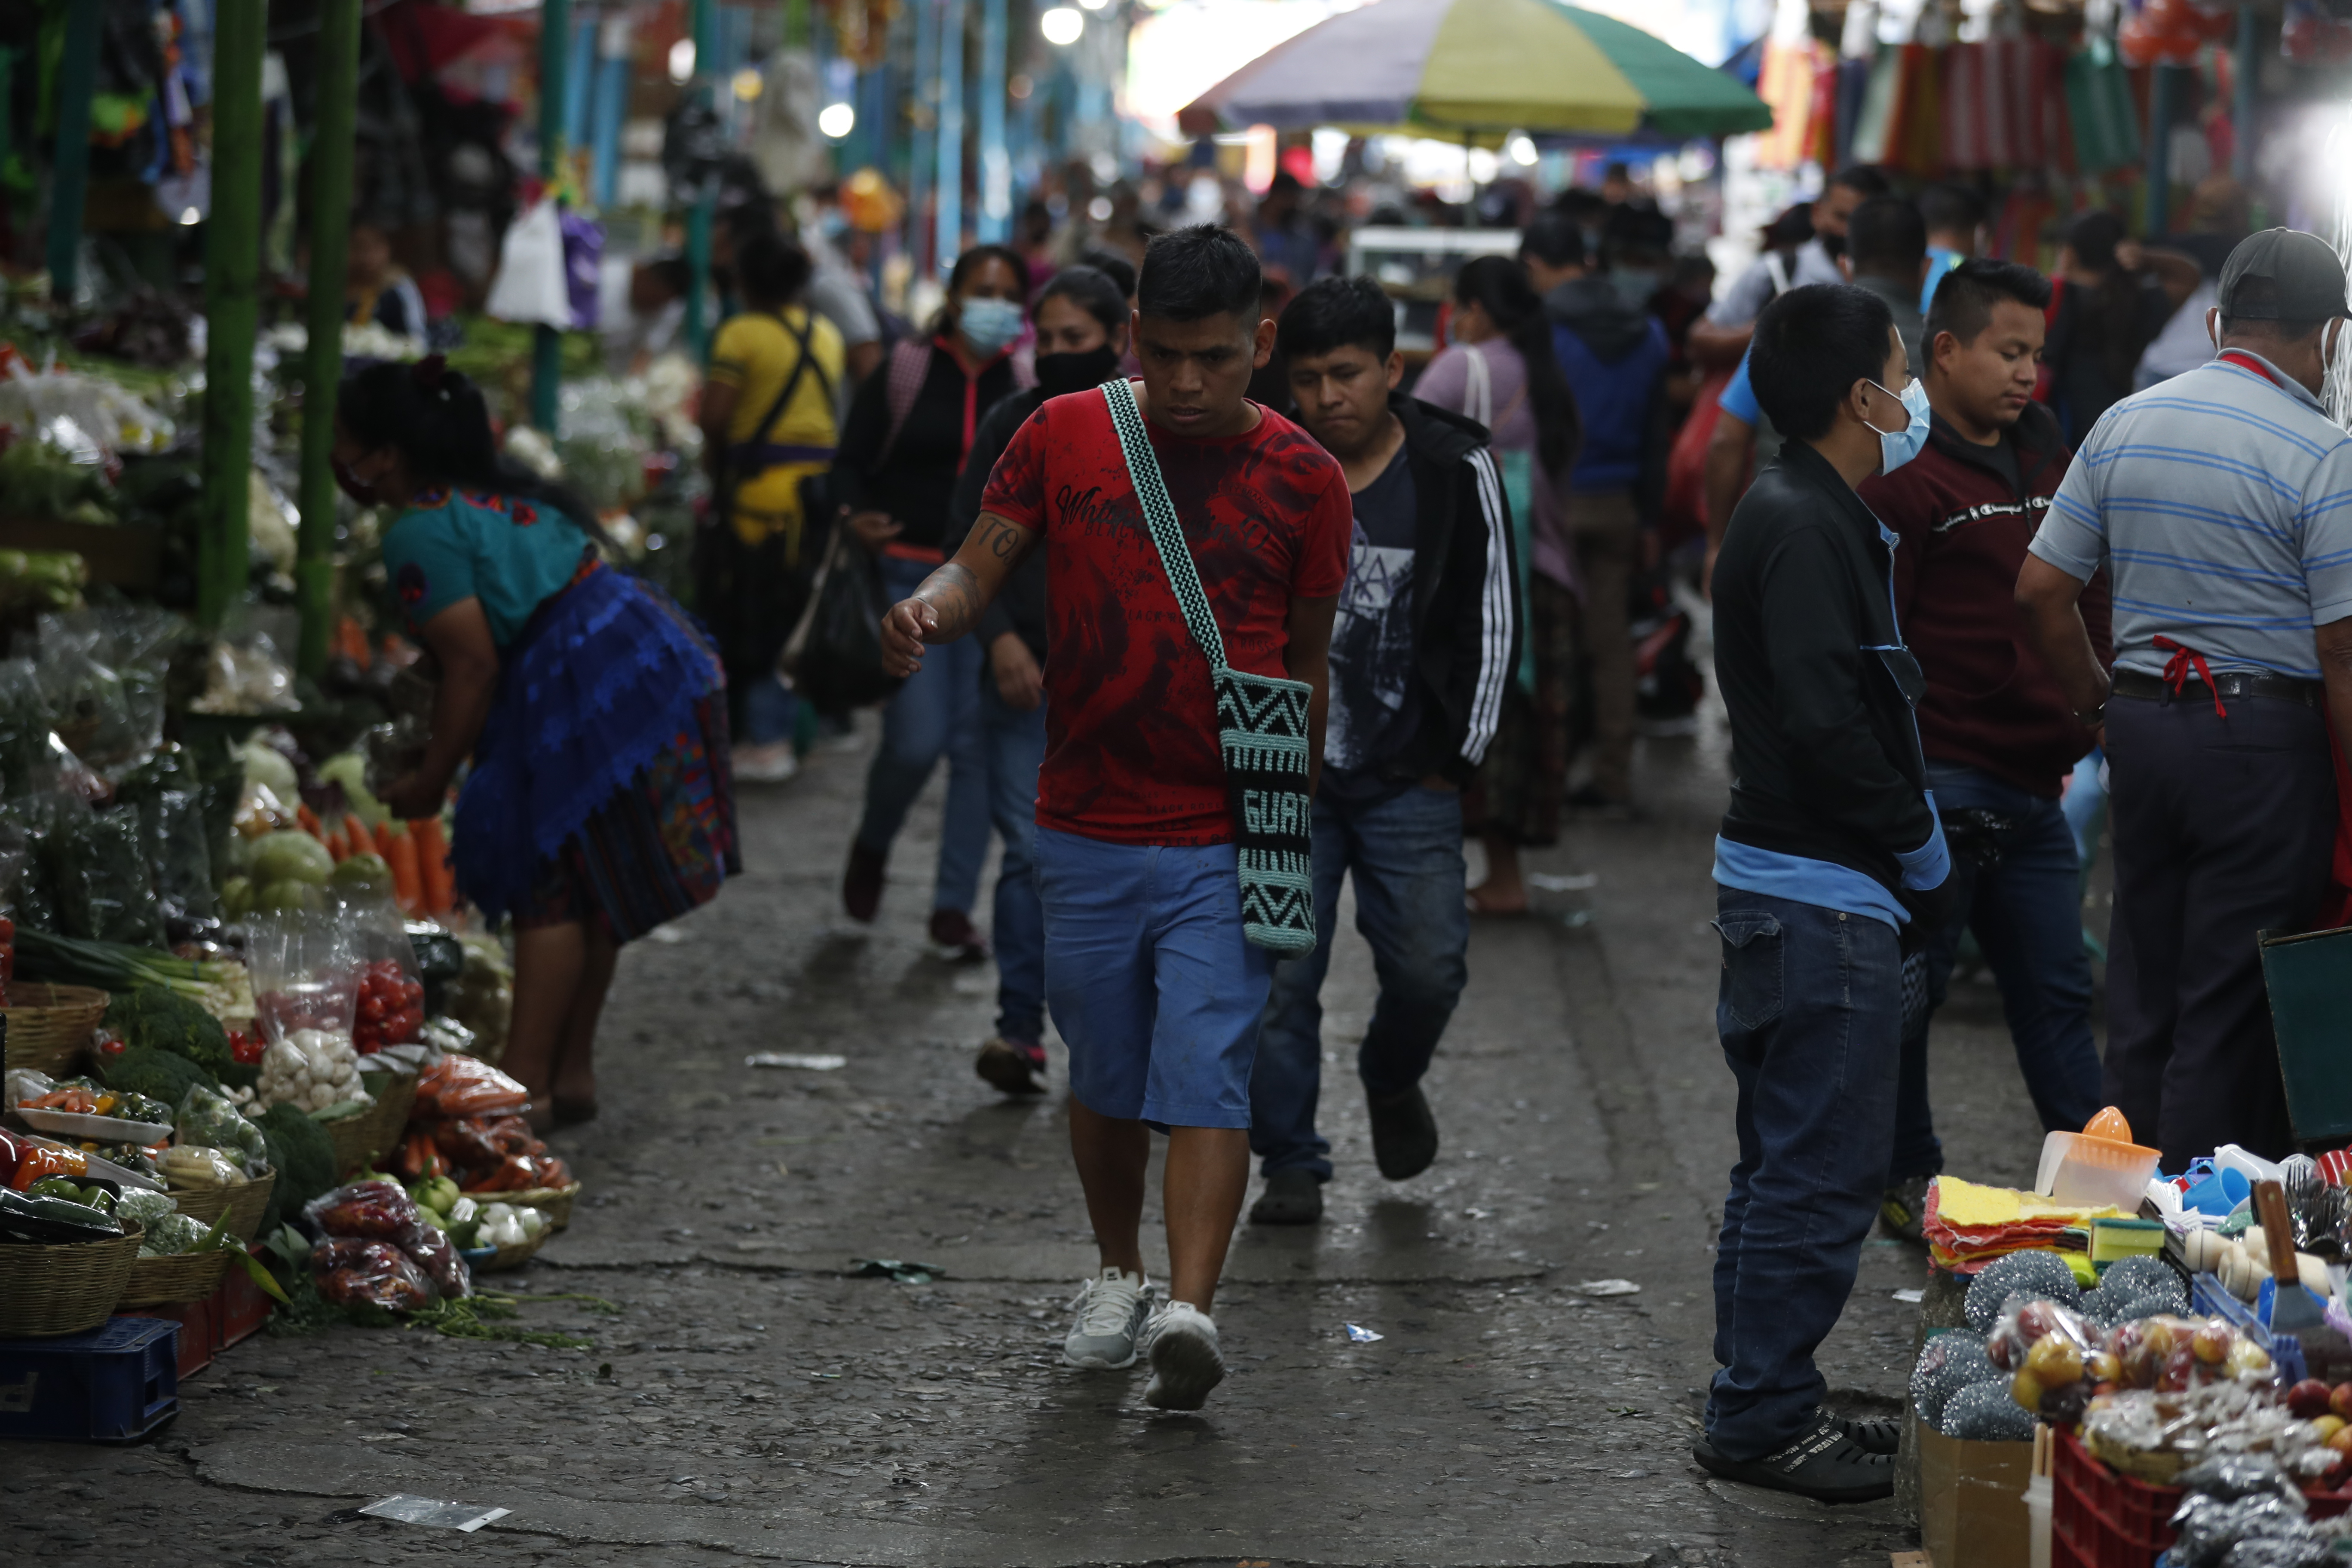 Los guatemaltecos tienen la talla más baja de los habitantes del mundo, así lo evidencia un análisis realizado entre población de 193 países. (Foto Prensa Libre: Esbin García)